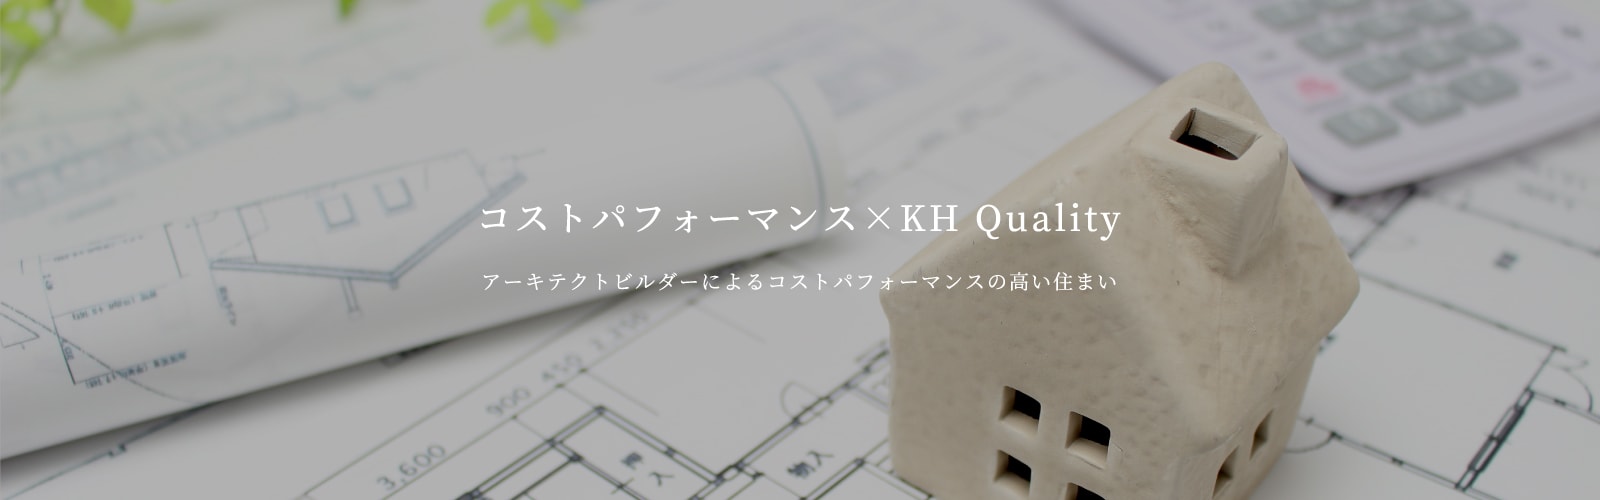 コストパフォーマンス×KH Quality【アーキテクトビルダーによるコストパフォーマンスの高い住まい】